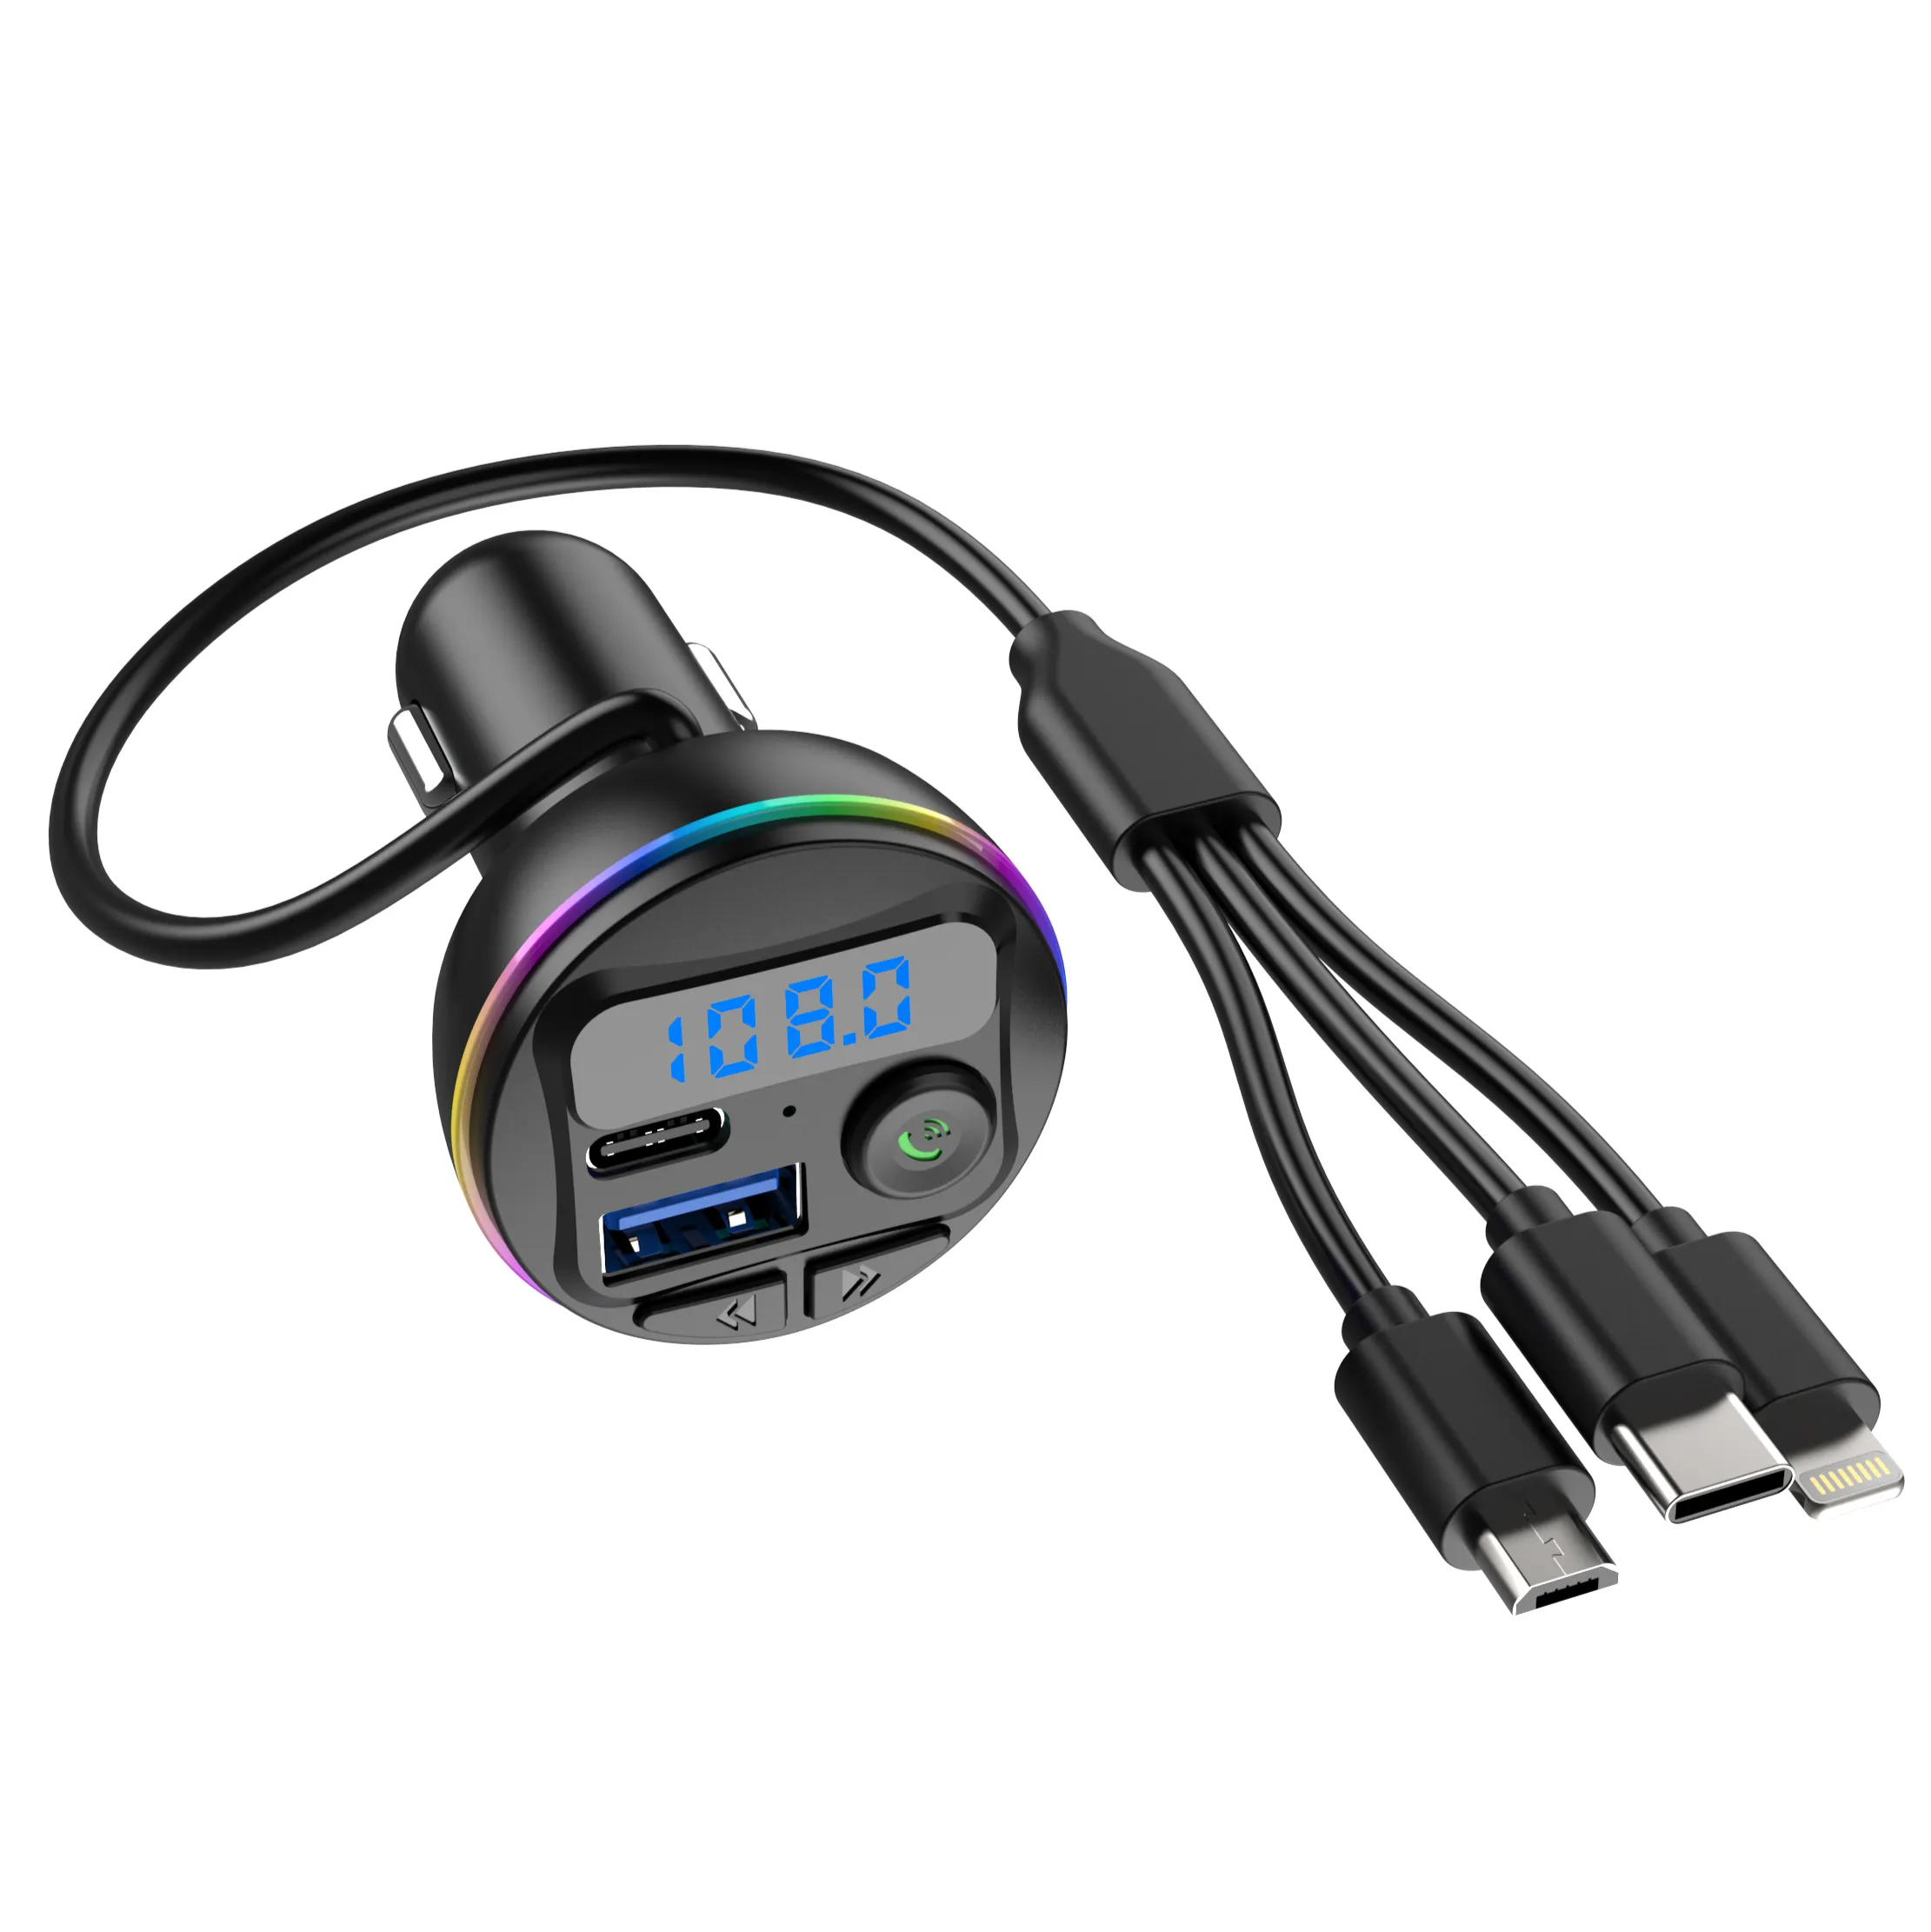 נגן MP3 נייד לרכב עם סאונד סטריאו וזיכרון כיבוי - דגם G46 משודרג (92 תווים)